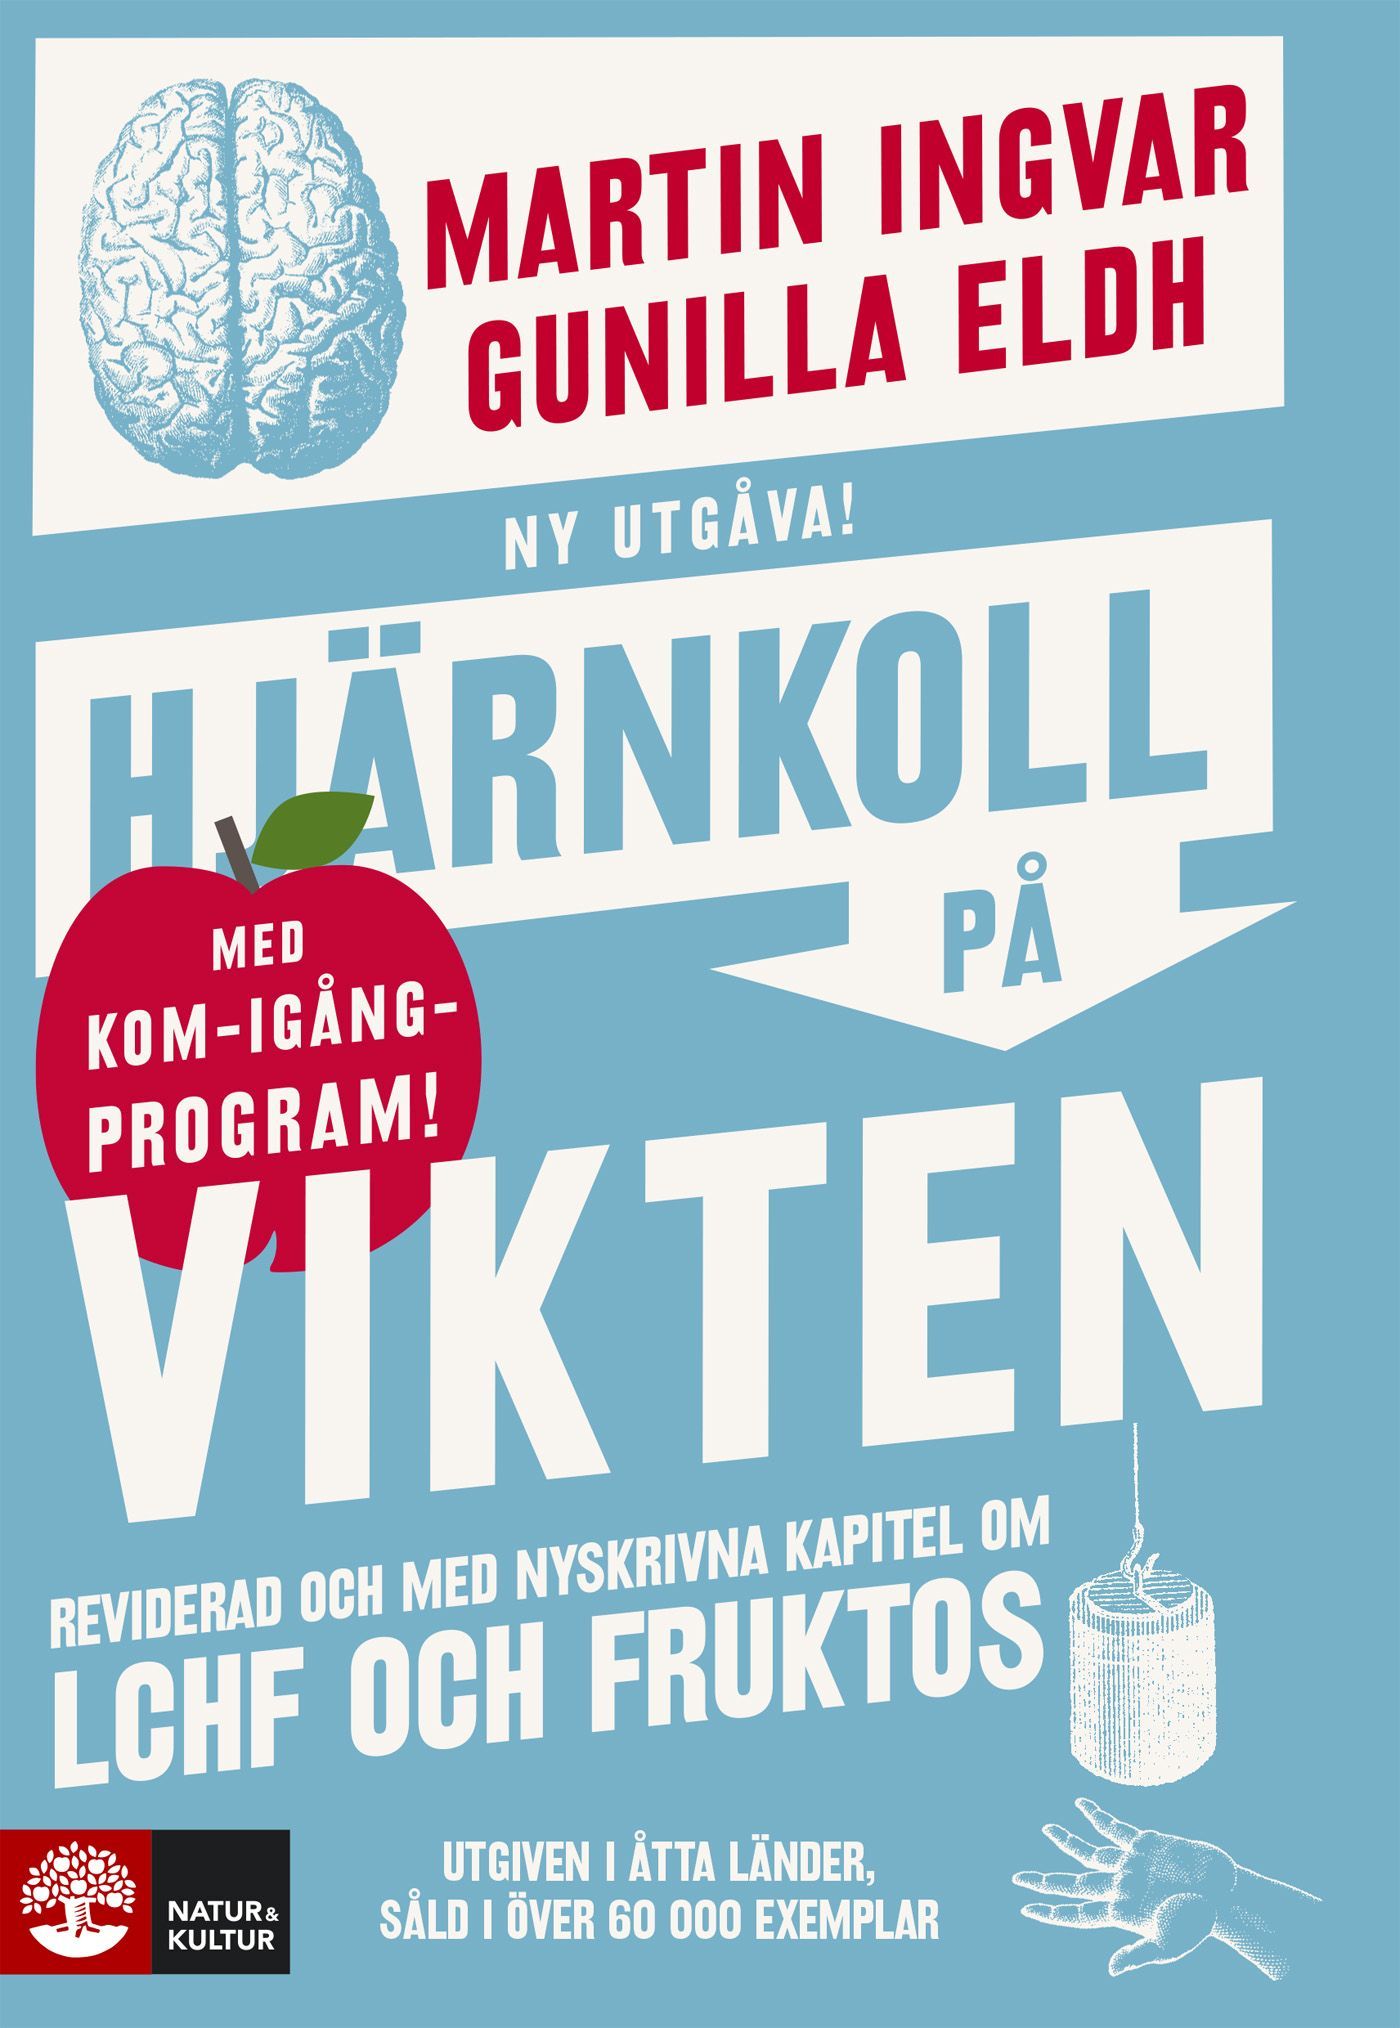 Hjärnkoll på vikten, e-bog af Gunilla Eldh, Martin Ingvar